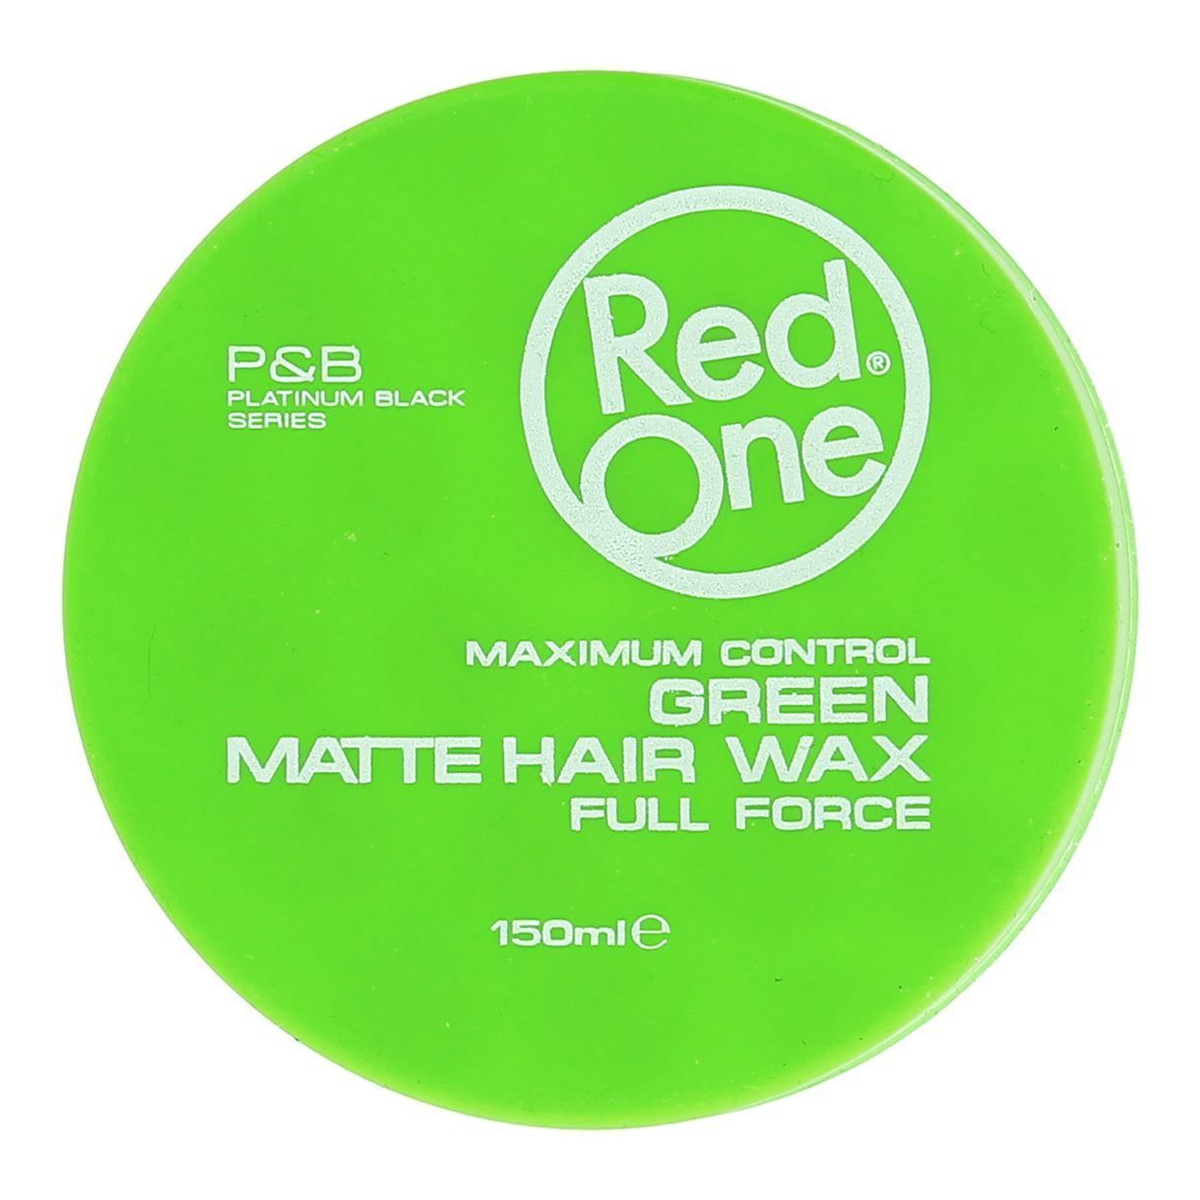 Red One Full Force wosk matowy do włosów Green 150ml